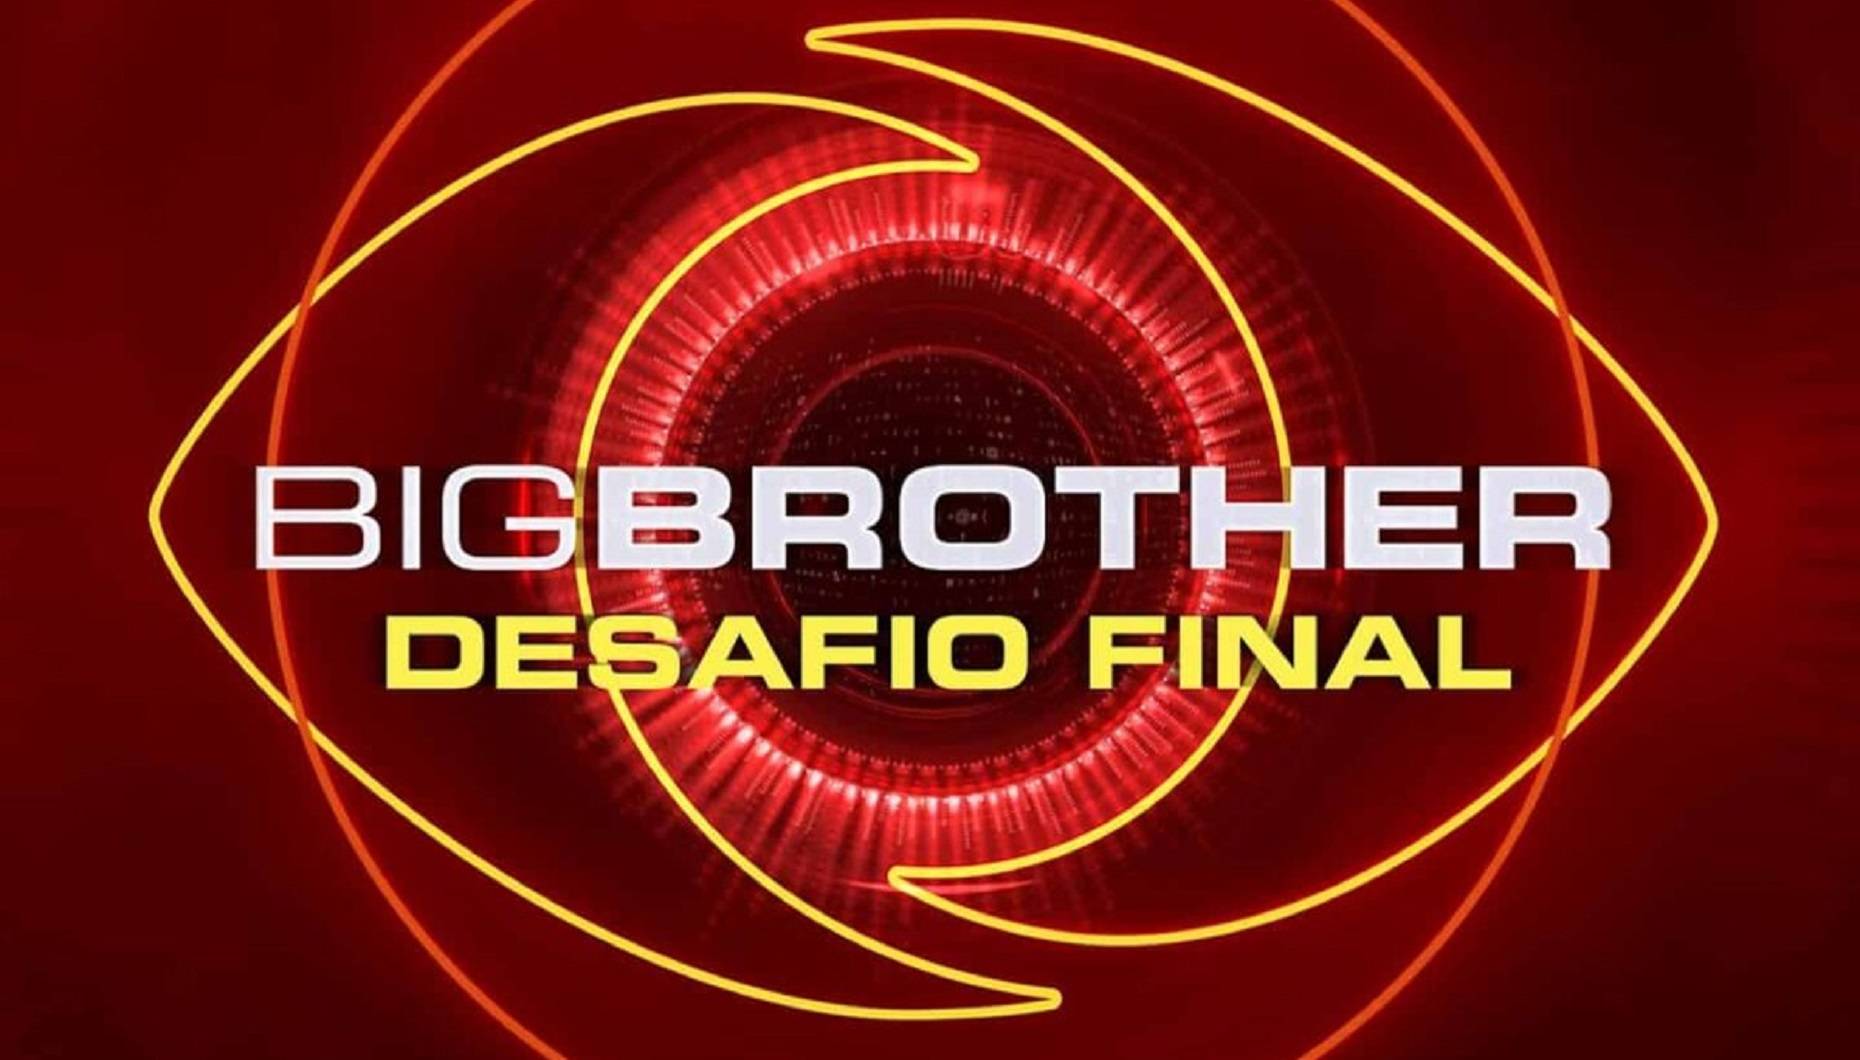 “Big Brother Desafio Final” Fica a saber quem aceitou e quem recusou